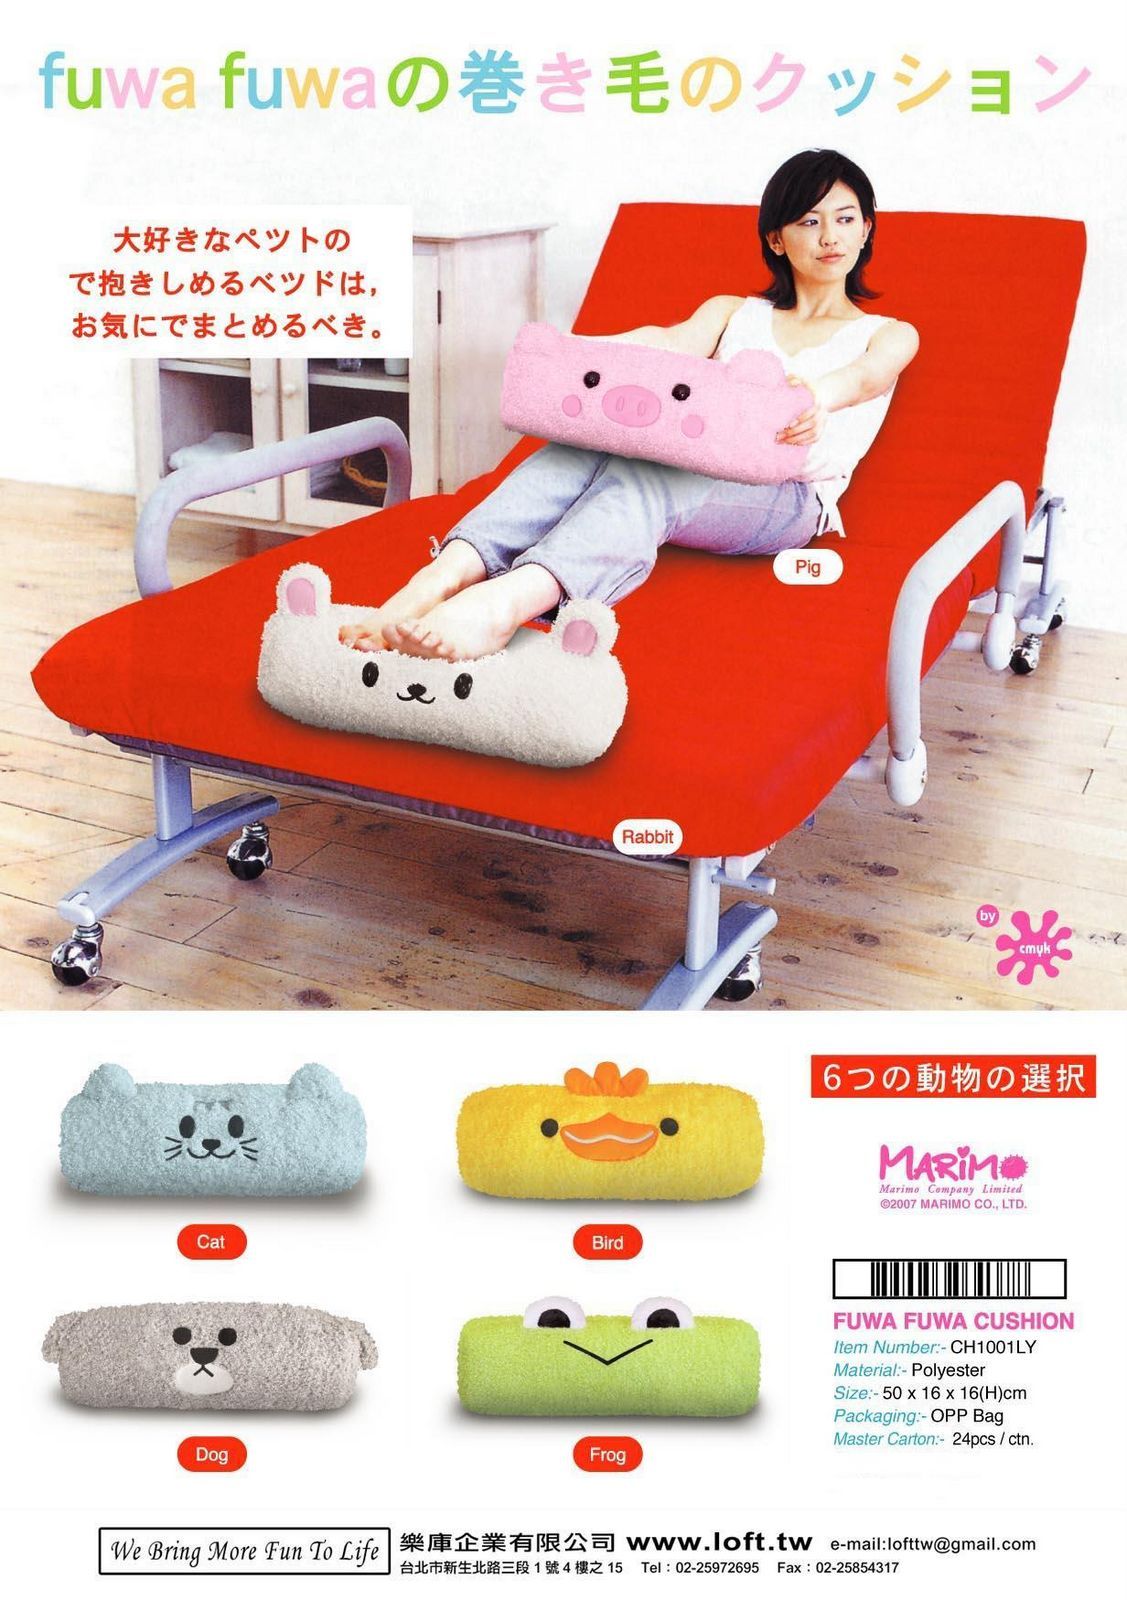 [(63)Fuwa+Fuwa+Cushion+catalog_ok1.jpg]